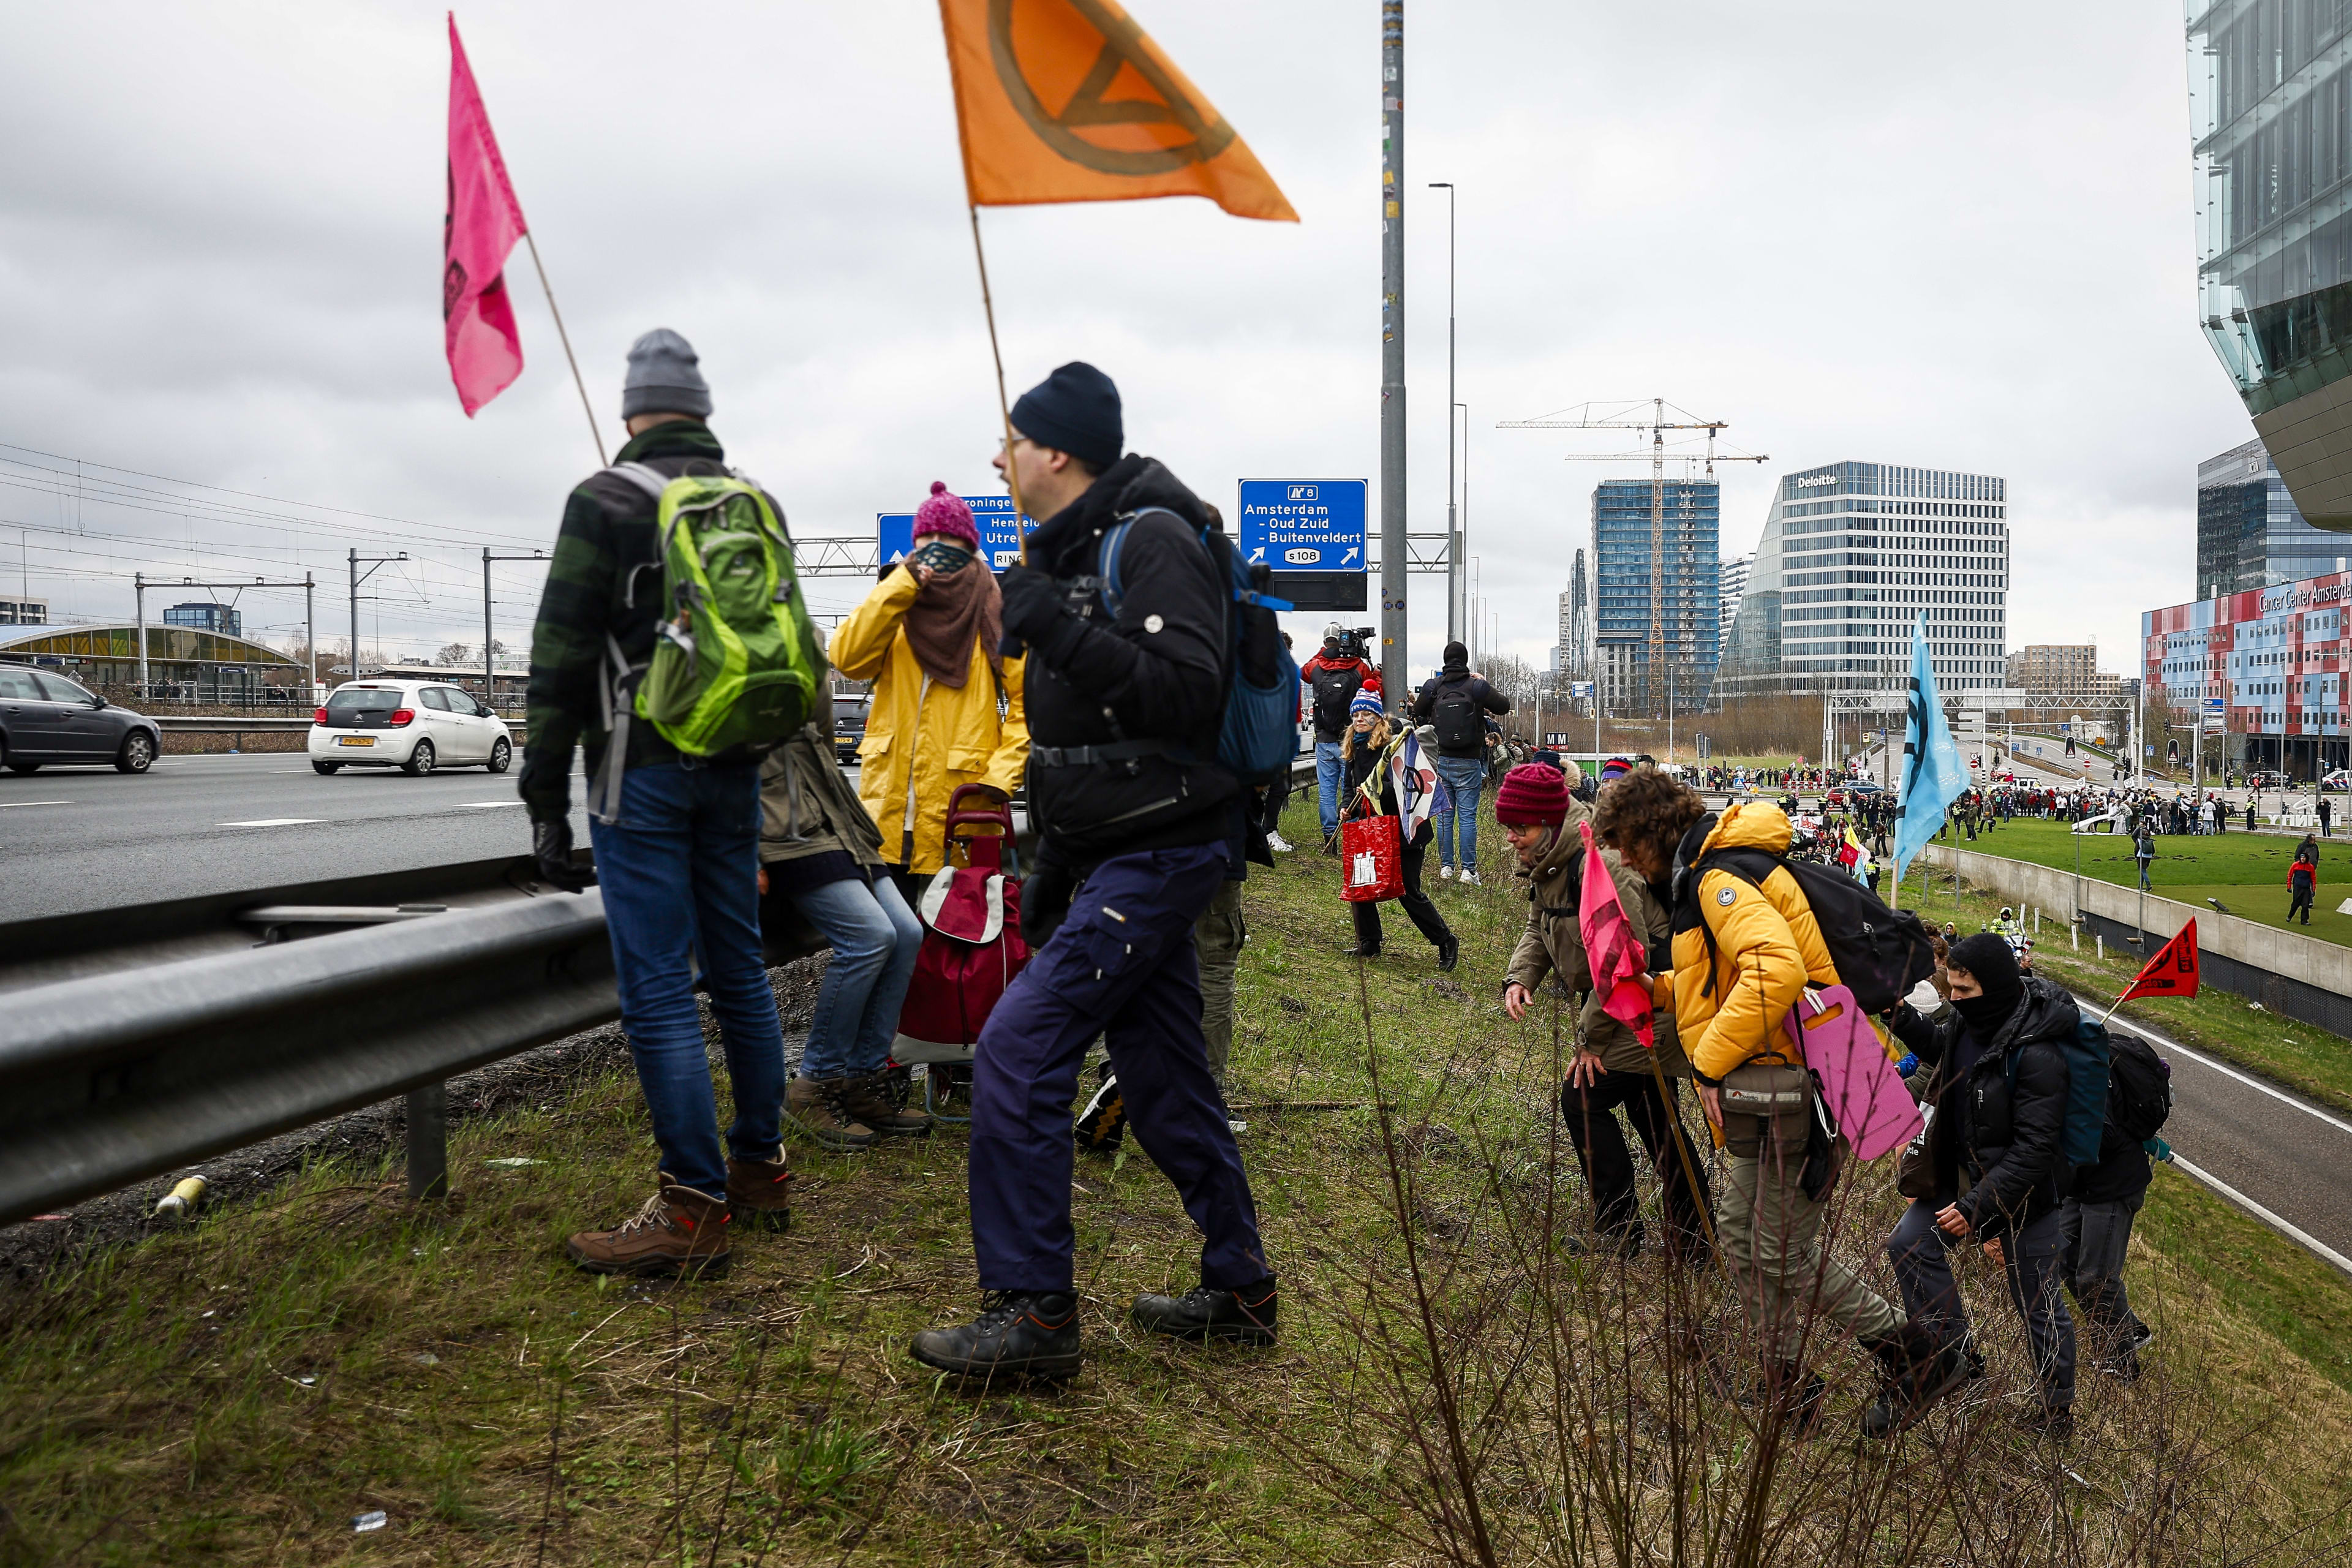 Honderden klimaatactivisten blokkeren A10 bij Amsterdam